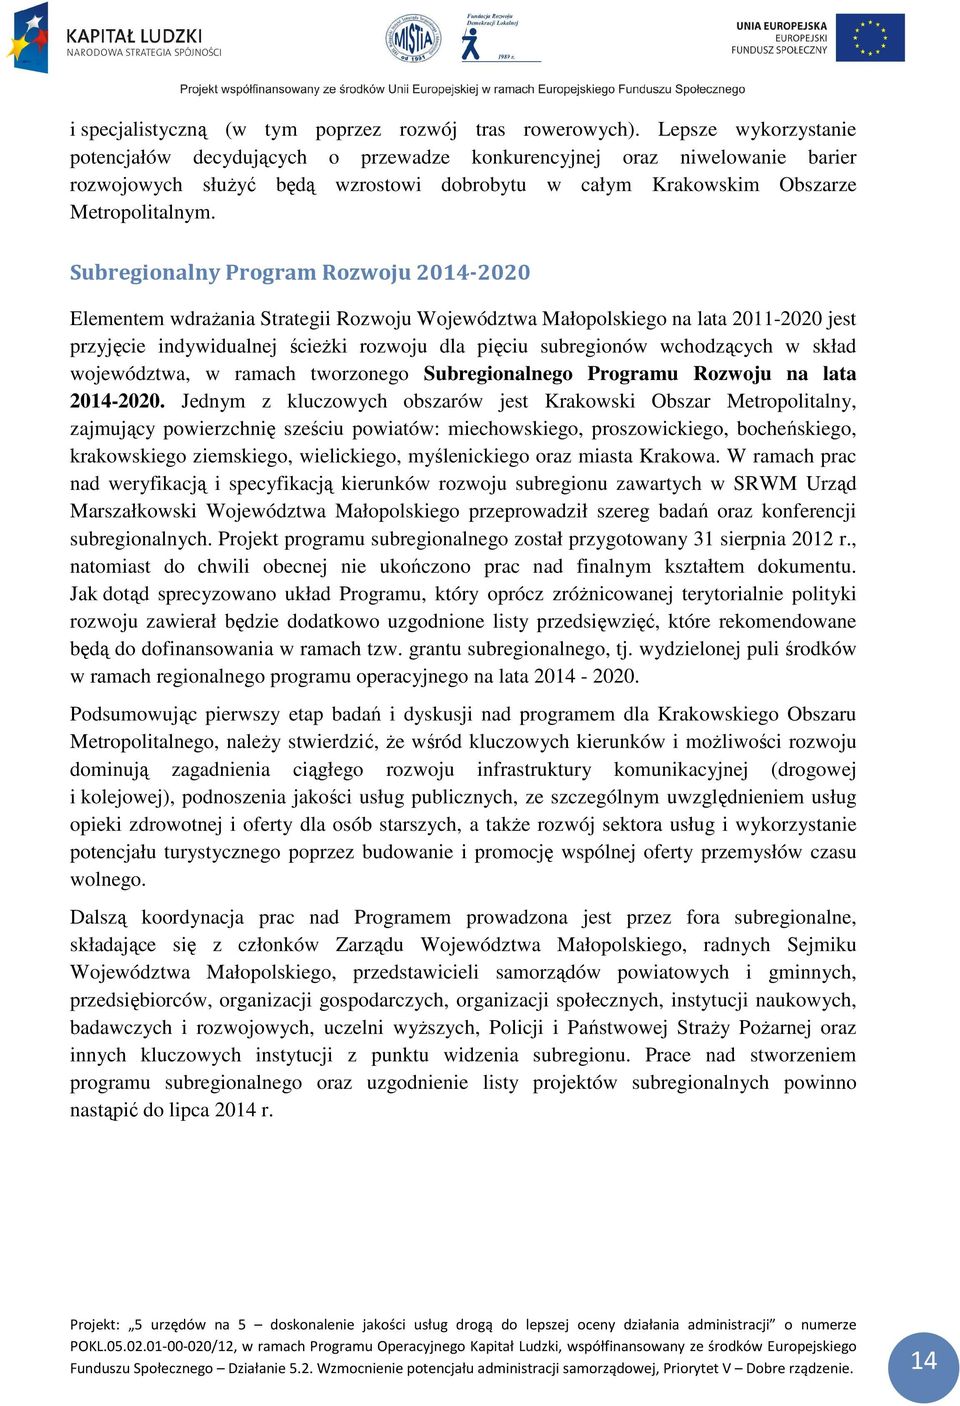 Subregionalny Program Rozwoju 2014-2020 Elementem wdrażania Strategii Rozwoju Województwa Małopolskiego na lata 2011-2020 jest przyjęcie indywidualnej ścieżki rozwoju dla pięciu subregionów